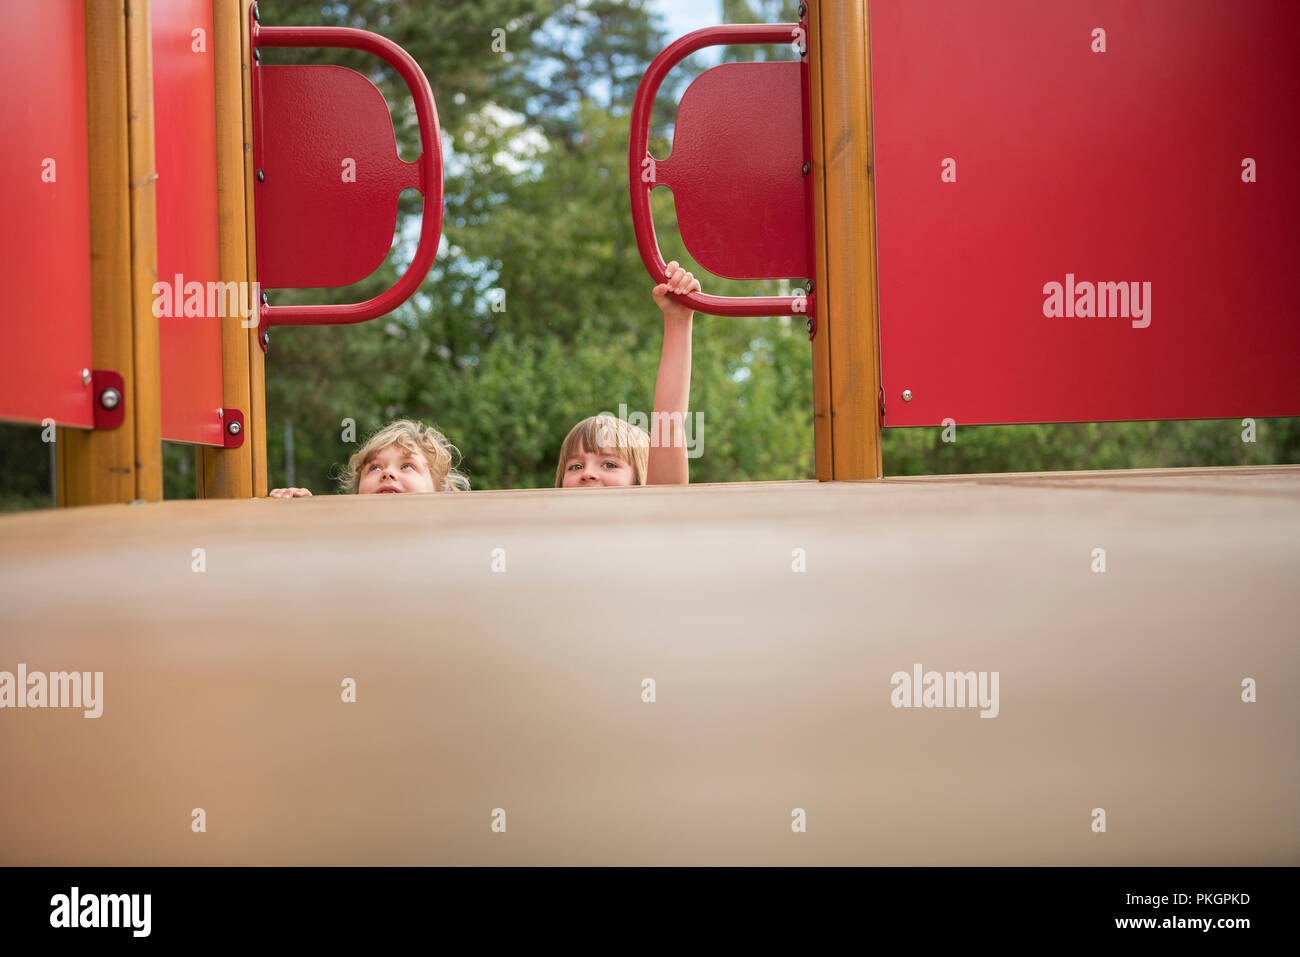 Deux jeunes filles s'amuser et jouer dans une aire de jeux. Banque D'Images